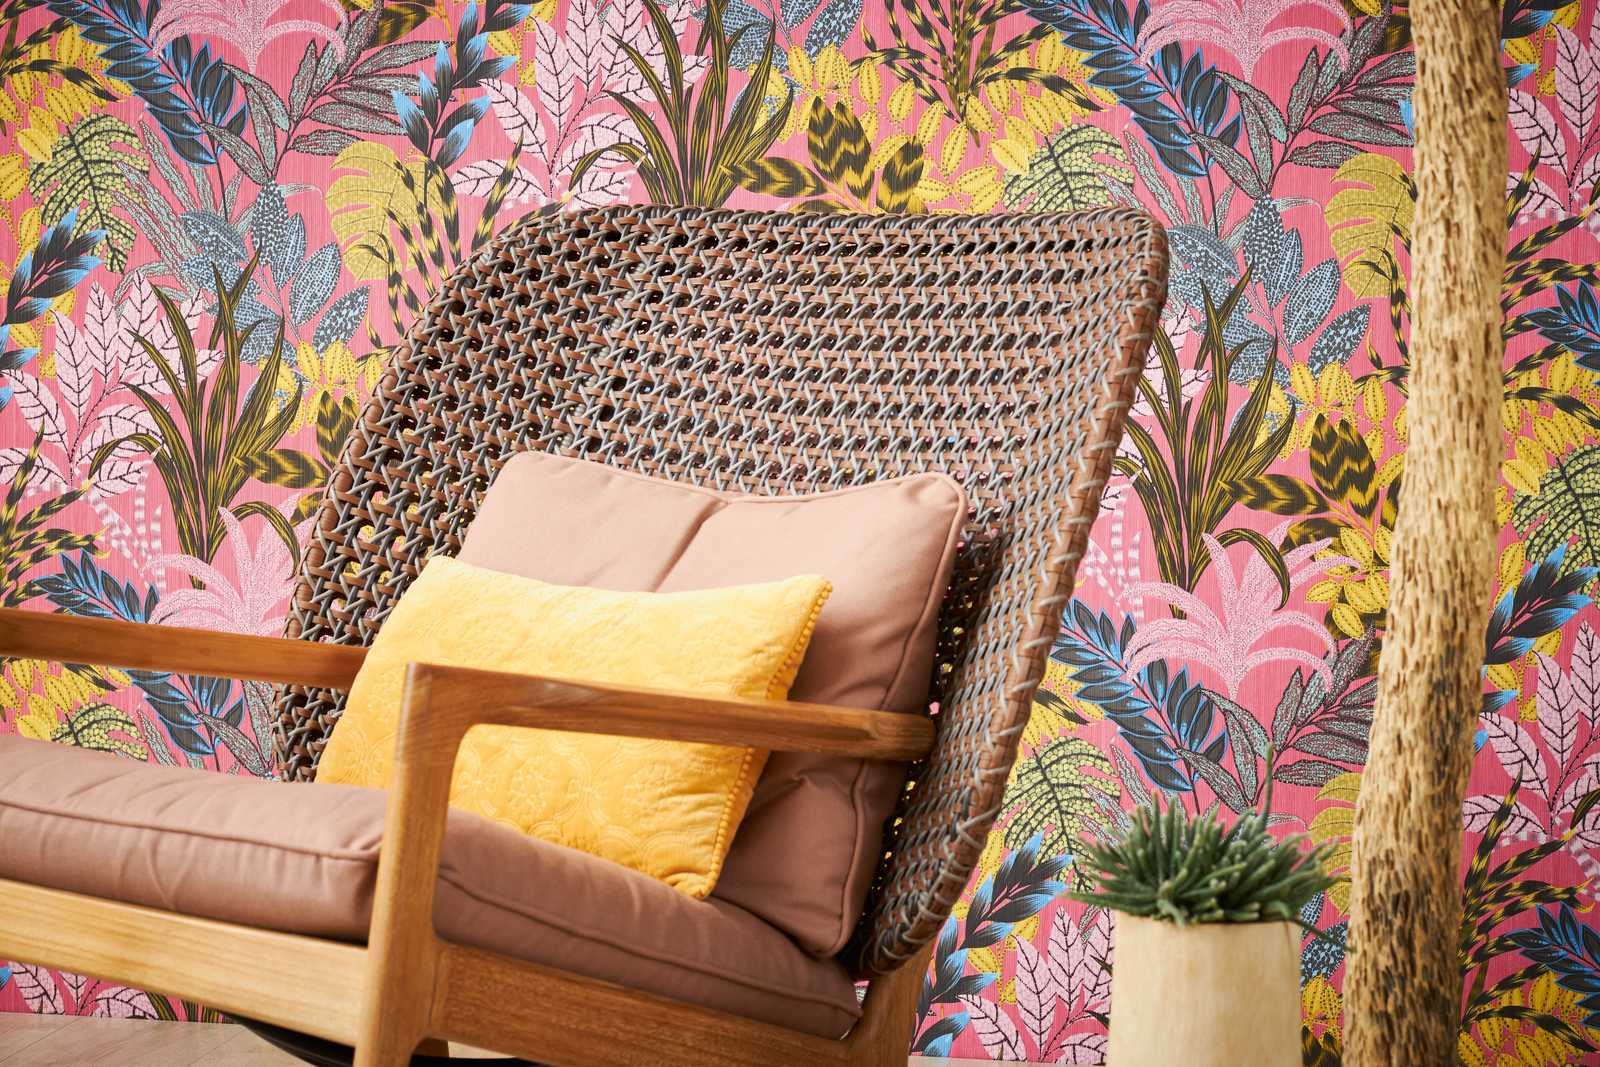             Papel pintado de tejido no tejido de colores con motivo de hojas y estructura en relieve - multicolor, amarillo, rosa
        